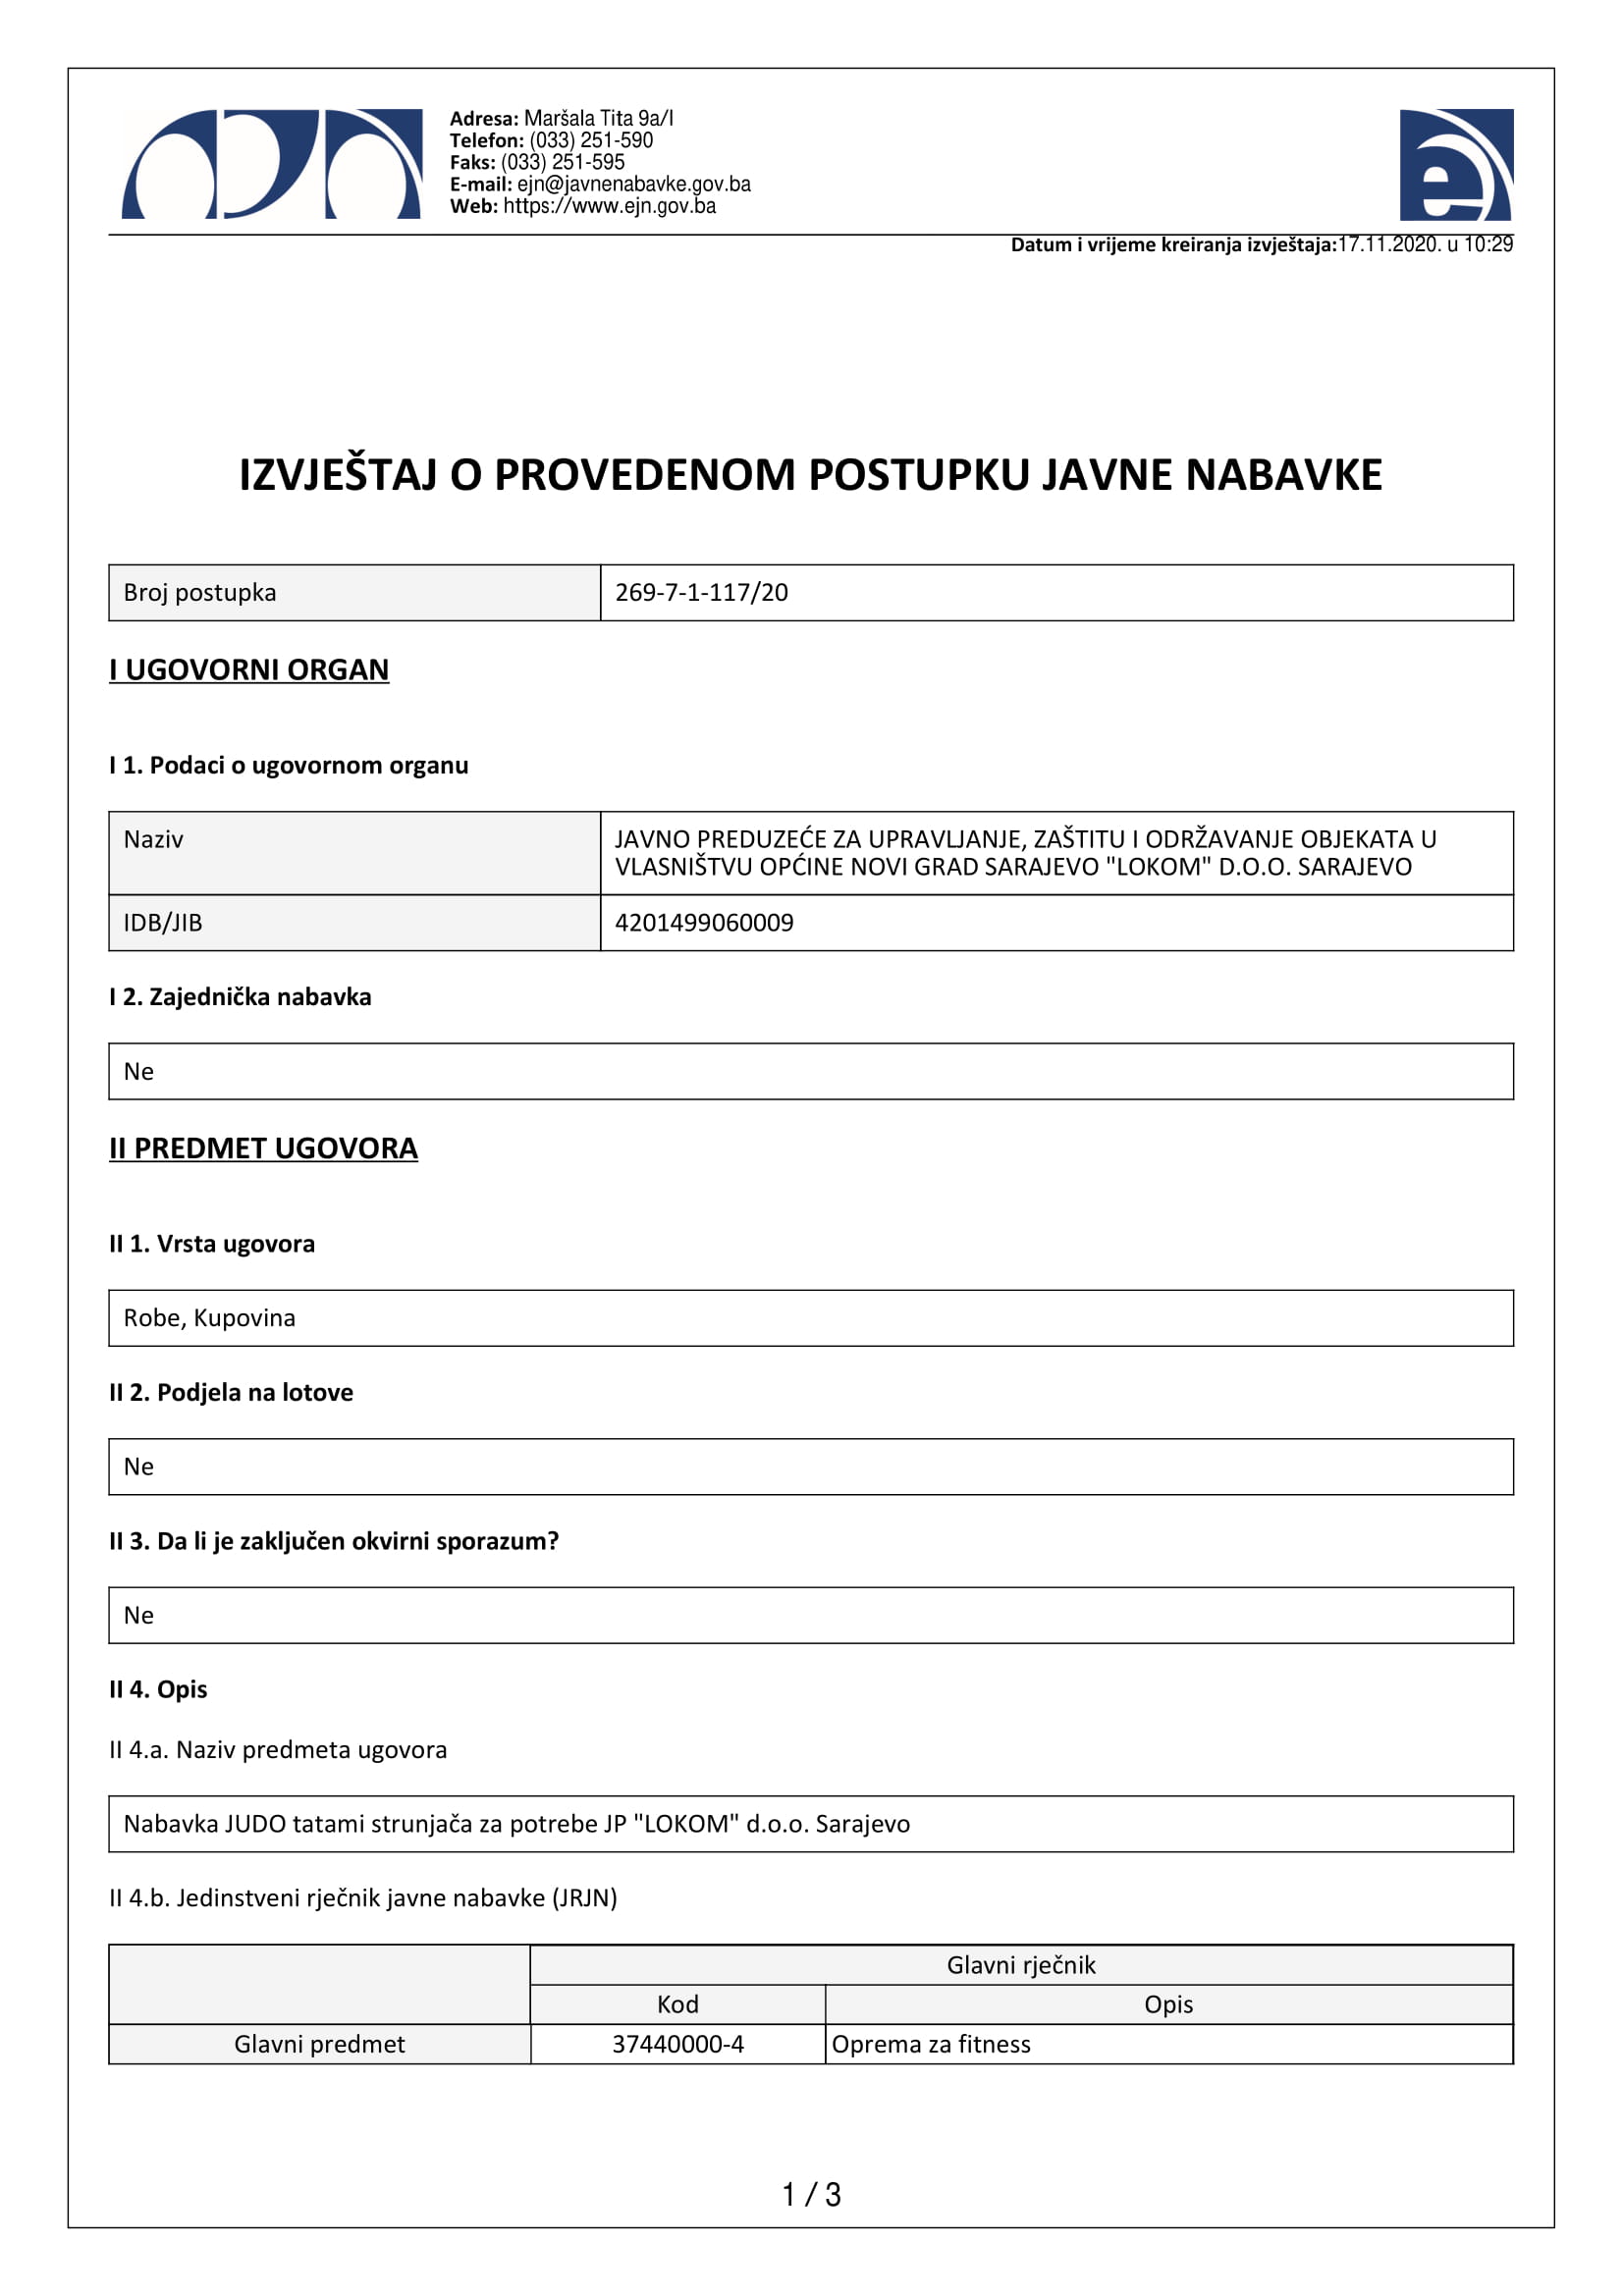 Izvještaj o provedenom postupku JN - Judo tatami strunjače 2020-1